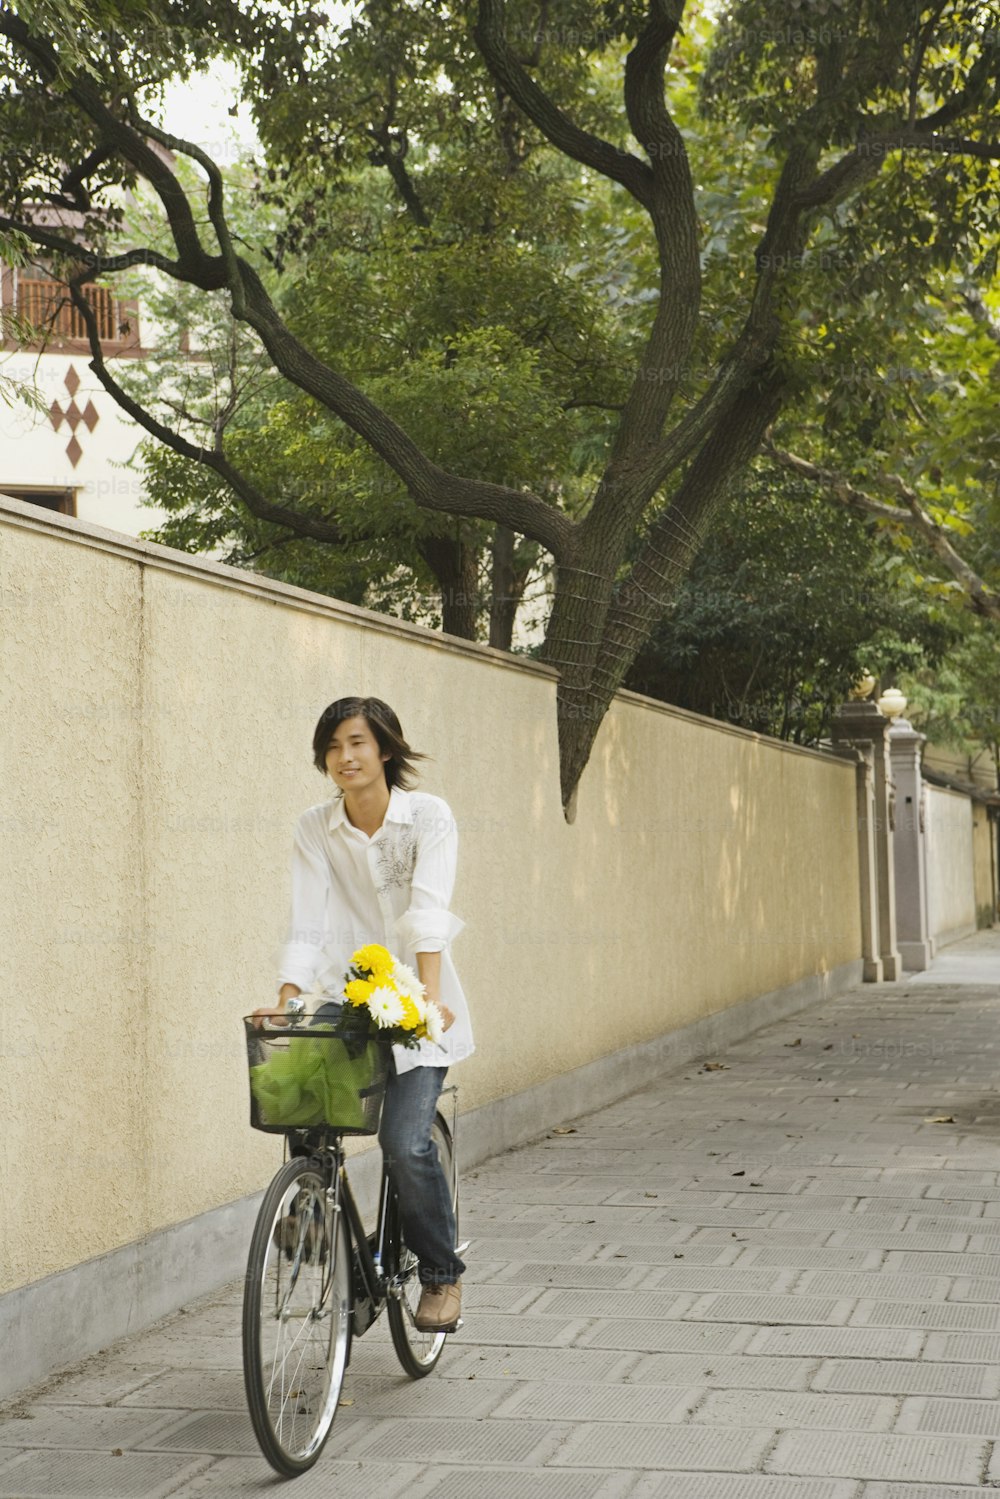 Une femme sur un trottoir à vélo